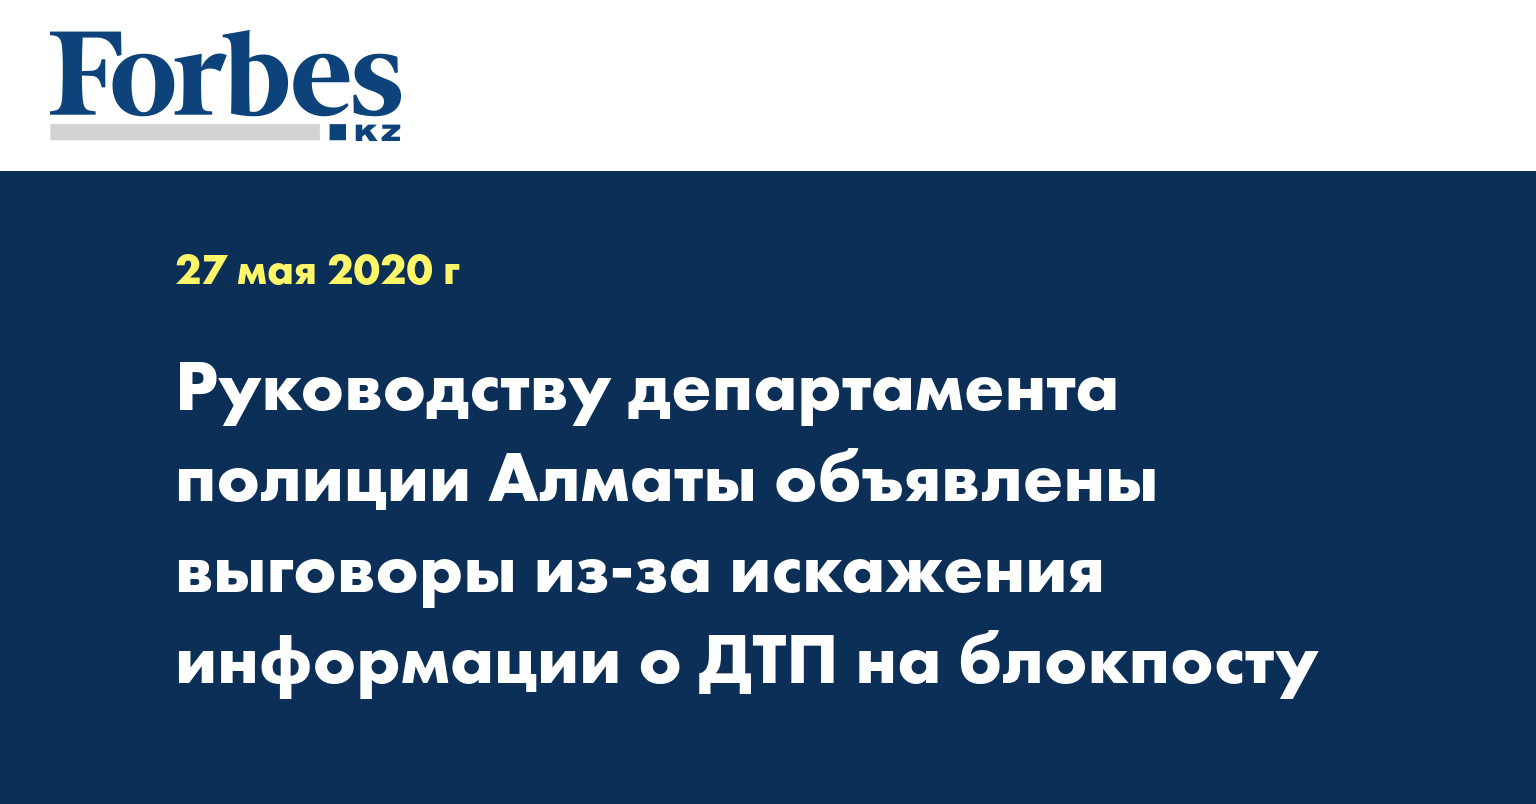 Руководству департамента полиции Алматы объявлены выговоры из-за искажения информации о ДТП на блокпосту